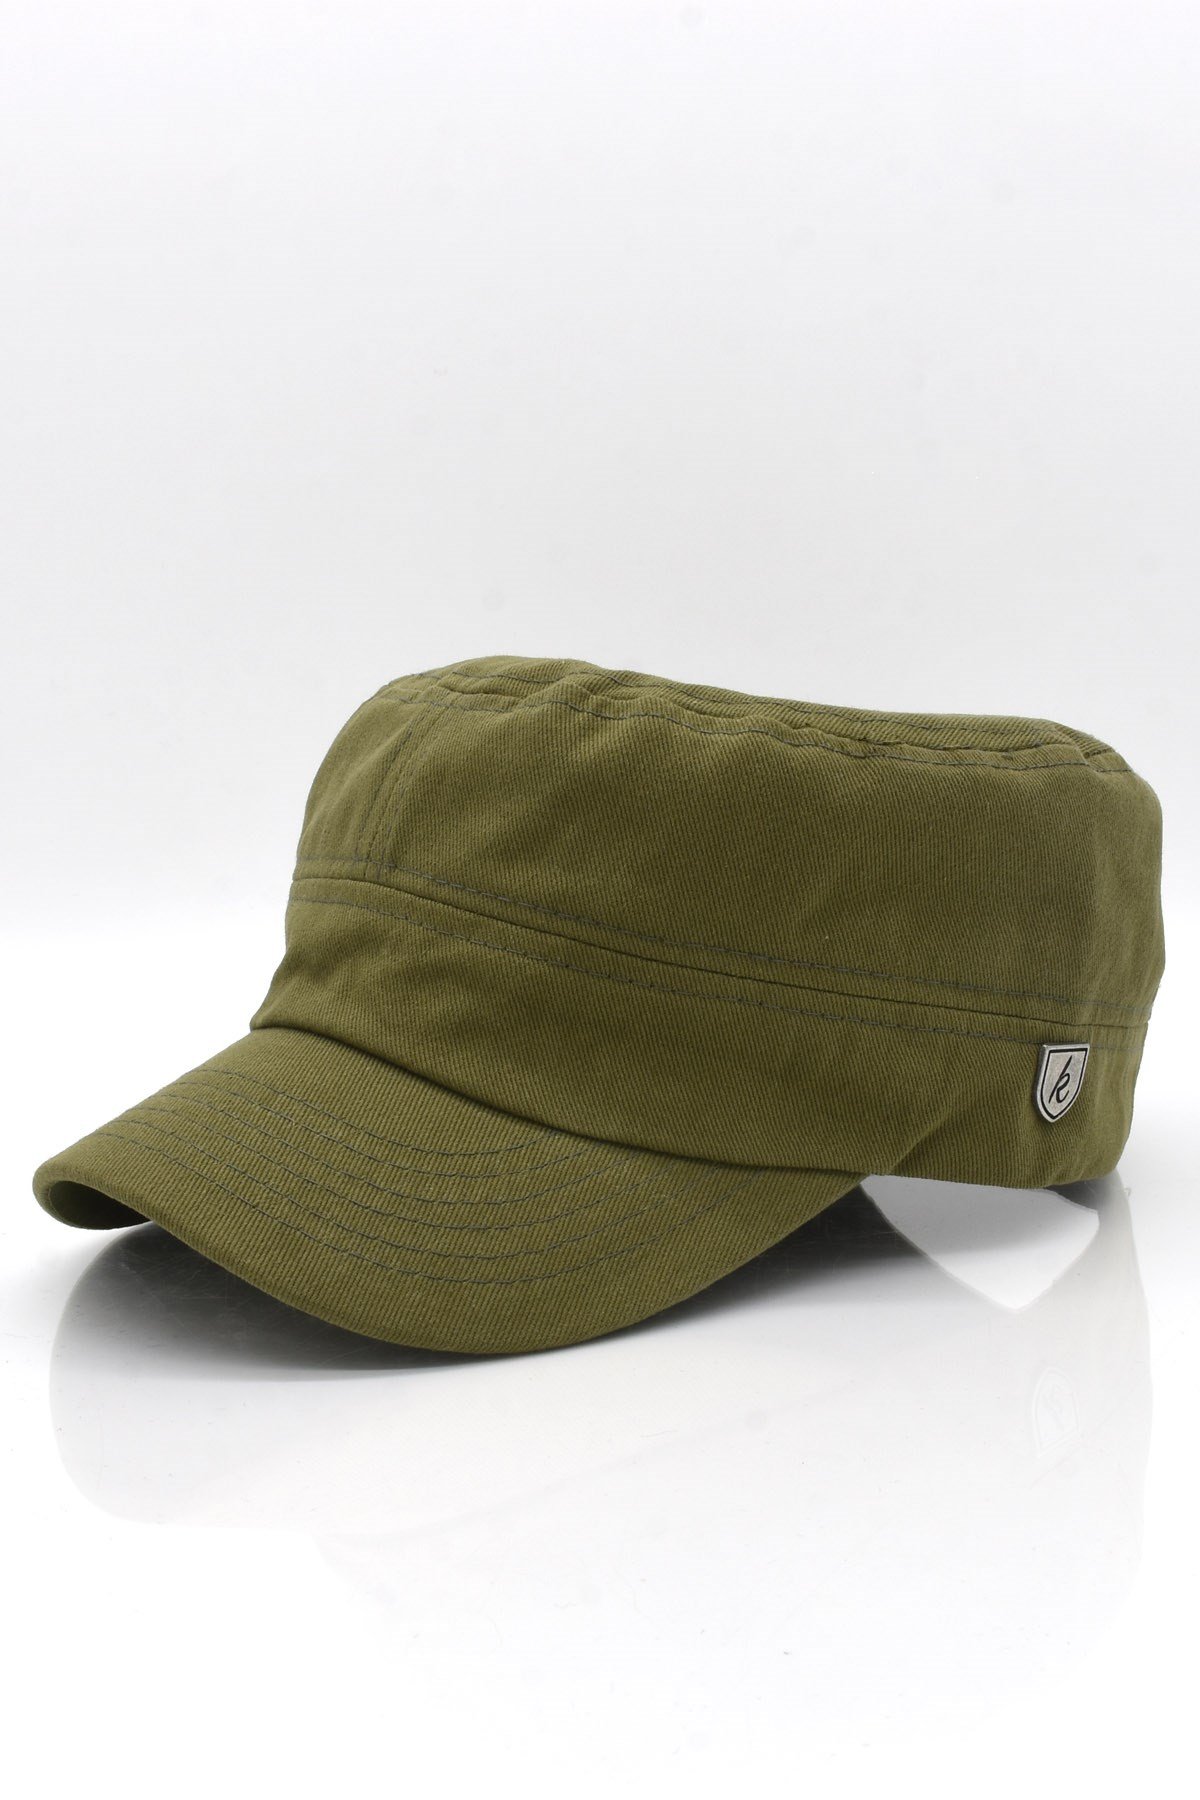 Külah Erkek Pamuklu Fidel Castro Şapka Yeşil Ayarlanabilir Outdoor Cap  KLH7145